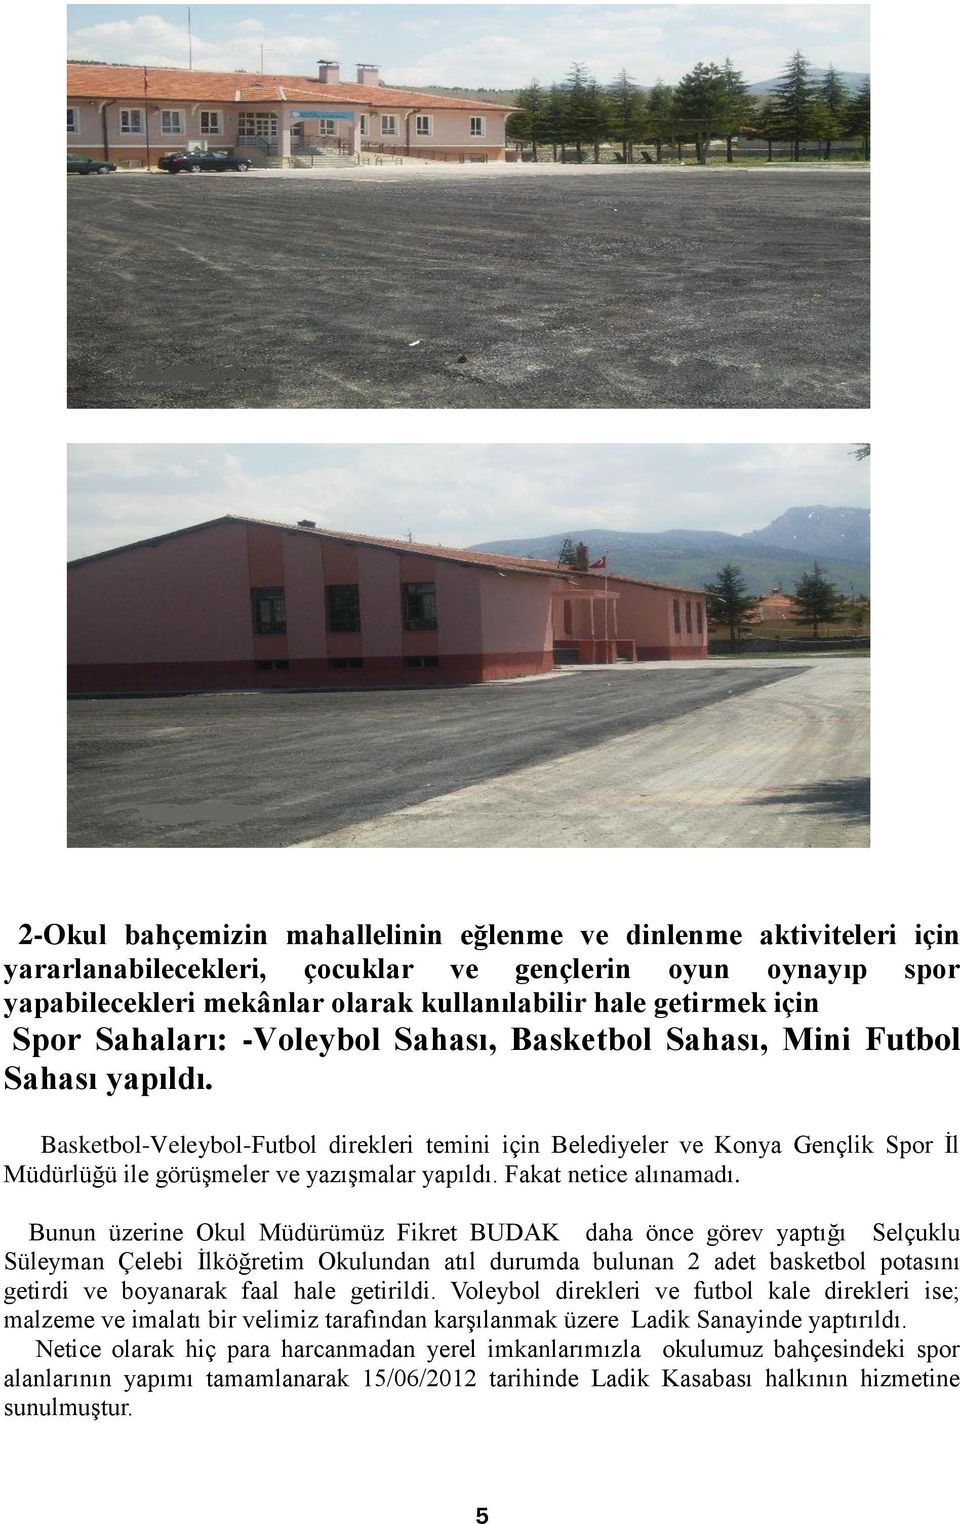 Basketbol-Veleybol-Futbol direkleri temini için Belediyeler ve Konya Gençlik Spor İl Müdürlüğü ile görüşmeler ve yazışmalar yapıldı. Fakat netice alınamadı.